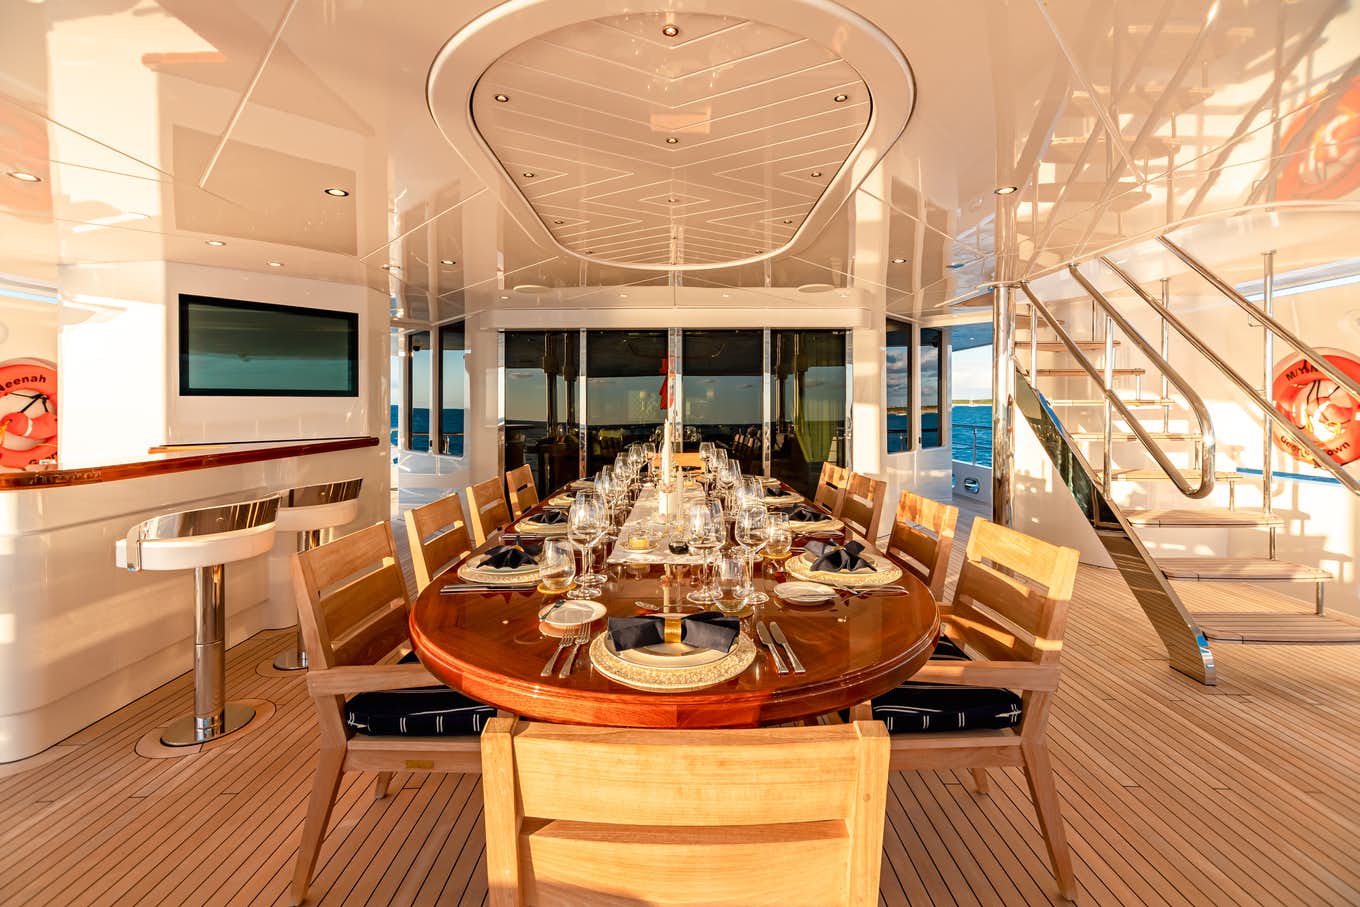 NEENAH Yacht Charter Price - Westport Yachts Luxury Yacht Charter